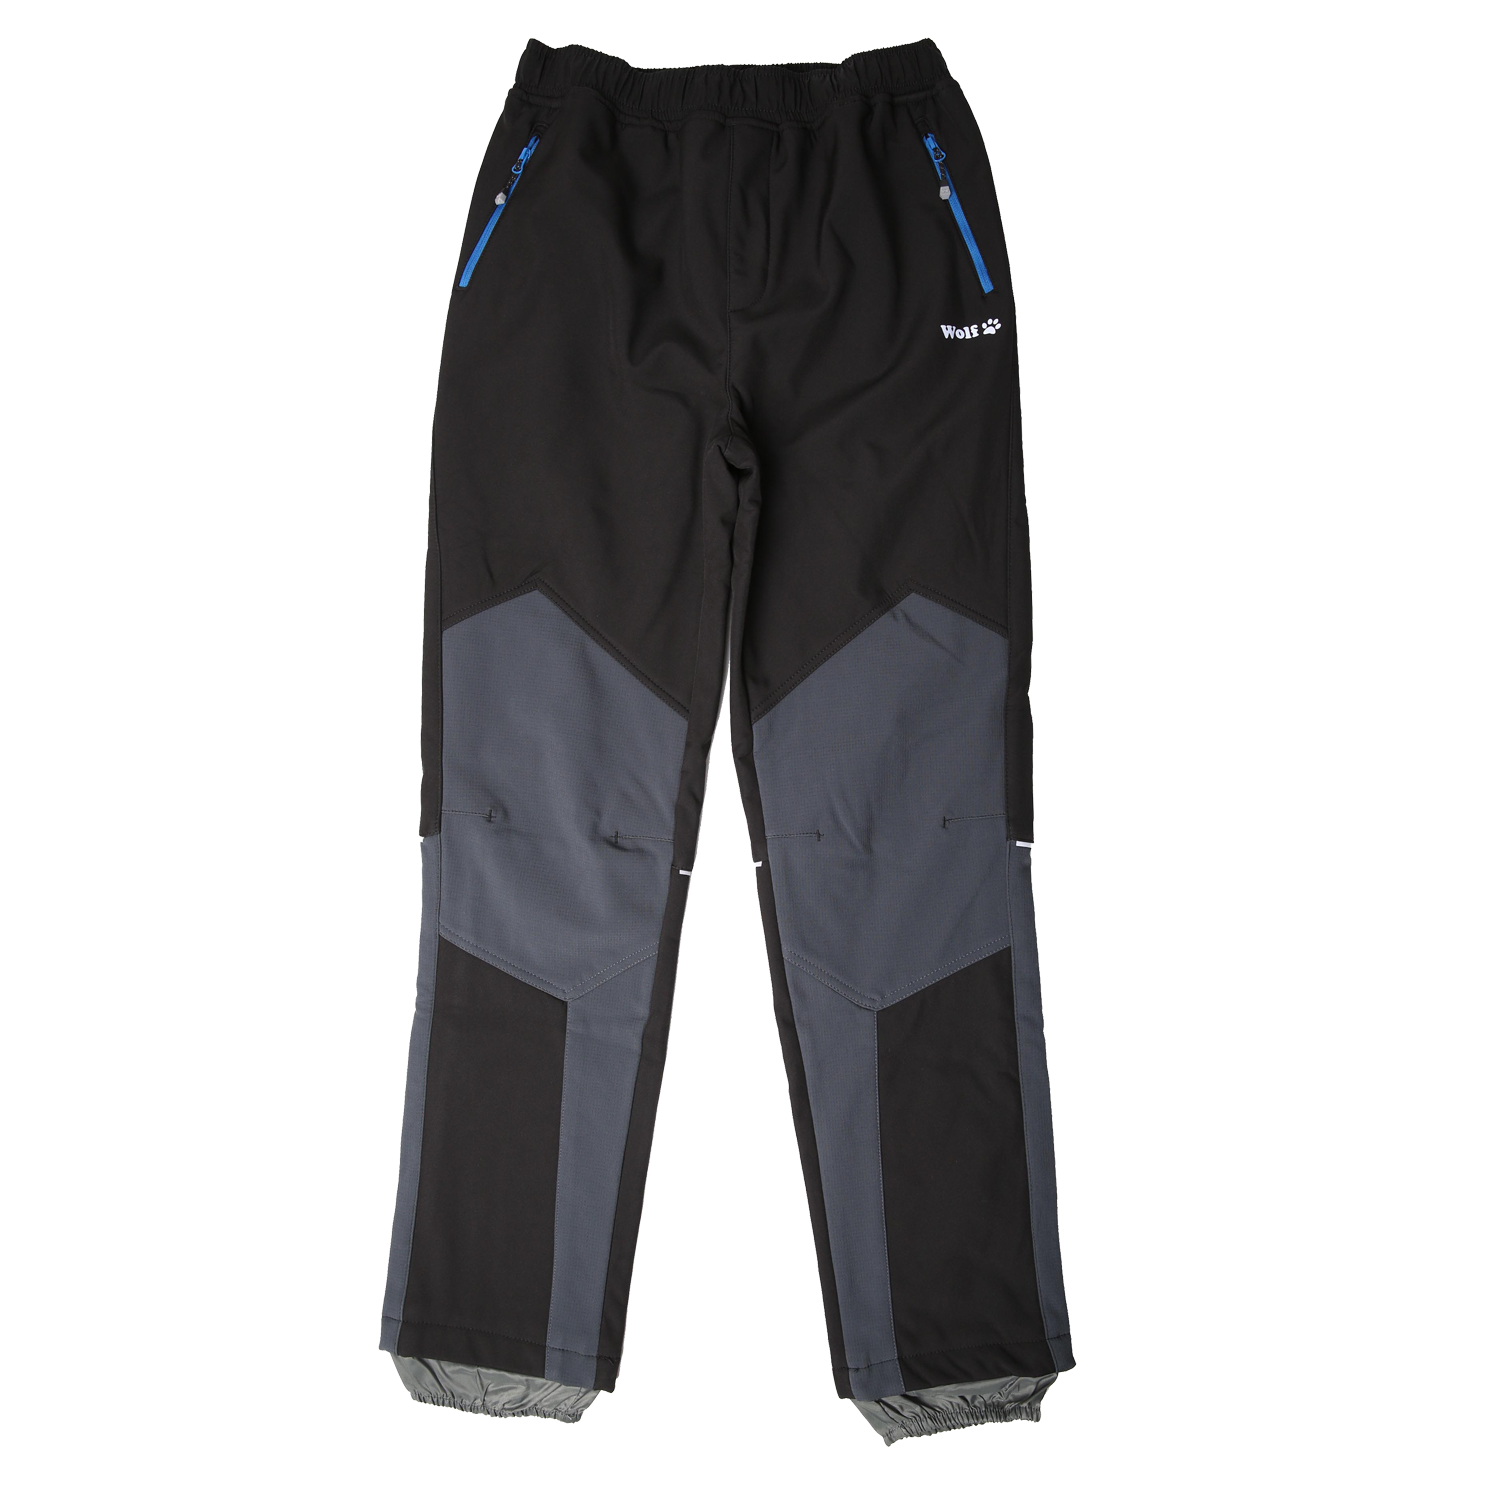 Chlapecké softshellové kalhoty, zateplené - Wolf B2297, černá/ šedá kolena Barva: Černá, Velikost: 164